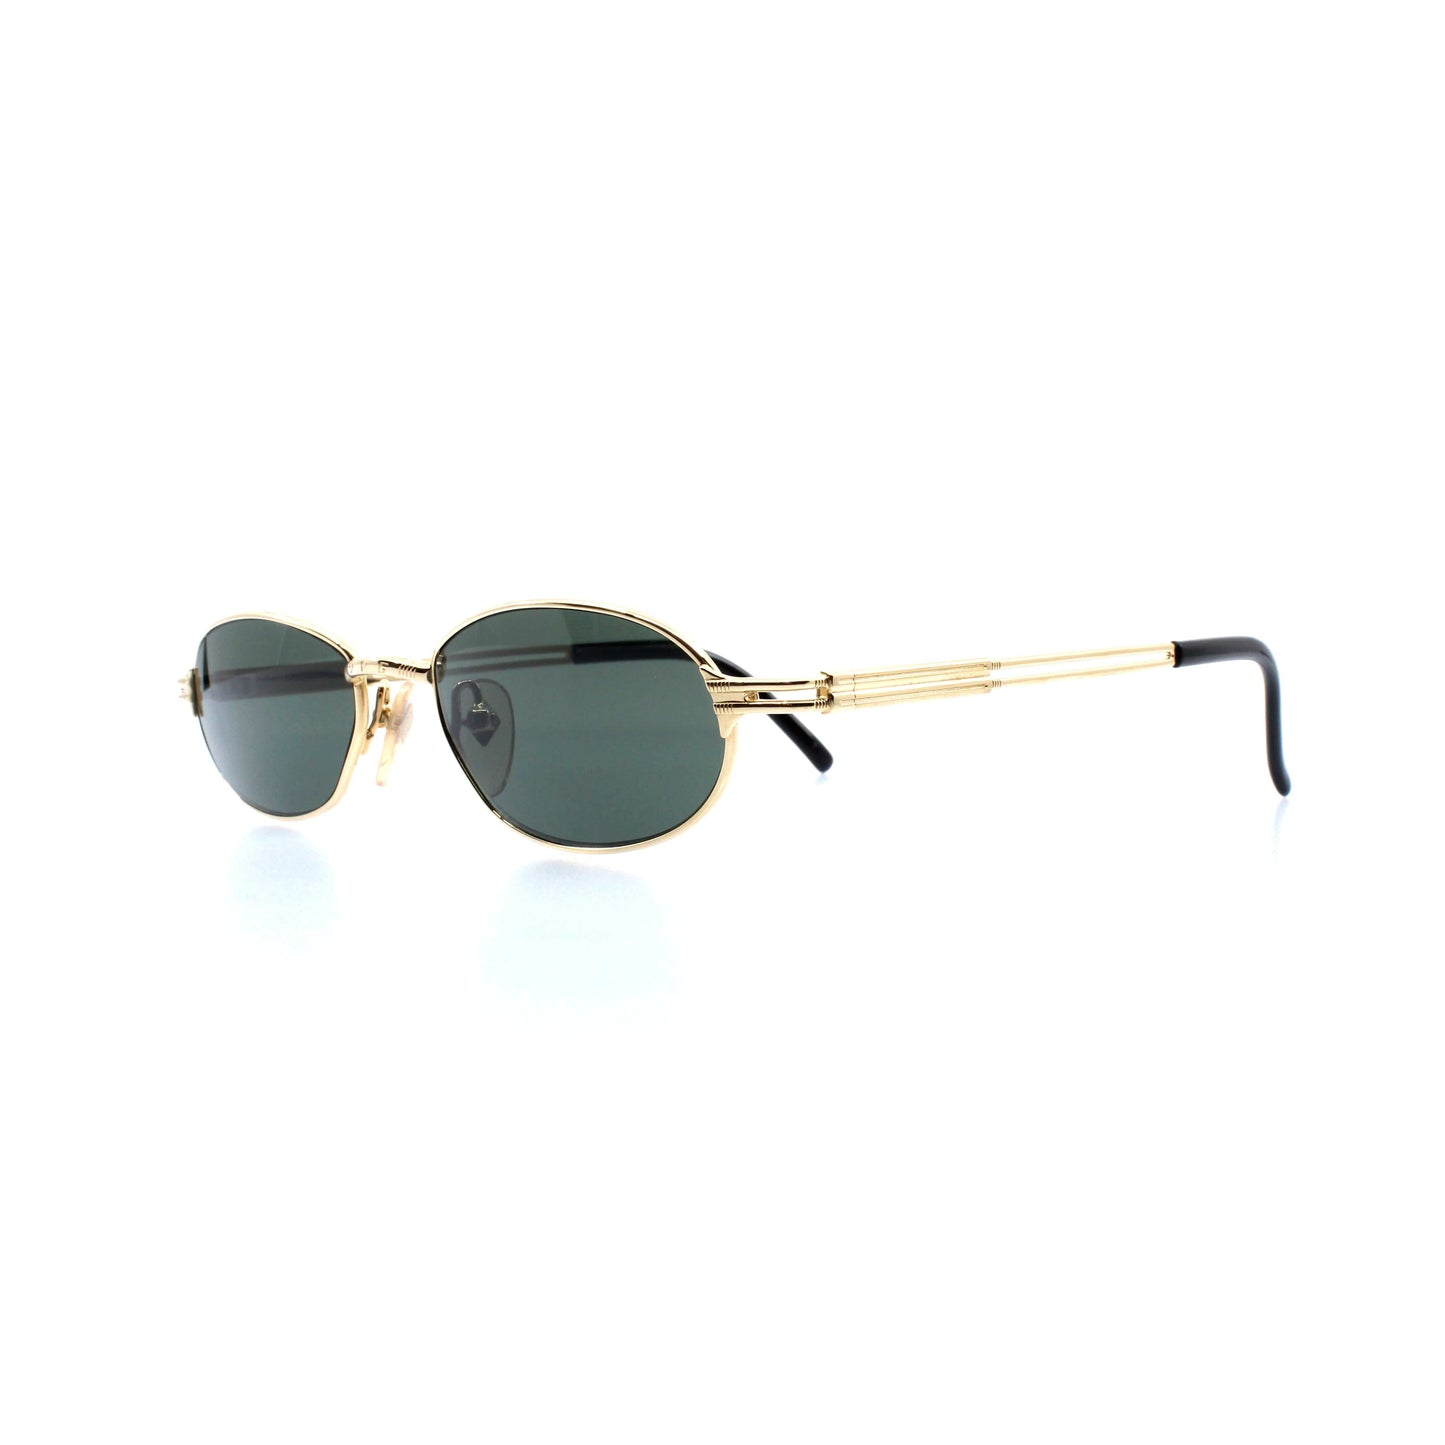 Gold Vintage Jean Paul Gaultier 58-7103 Sunglasses RSTKD Vintage